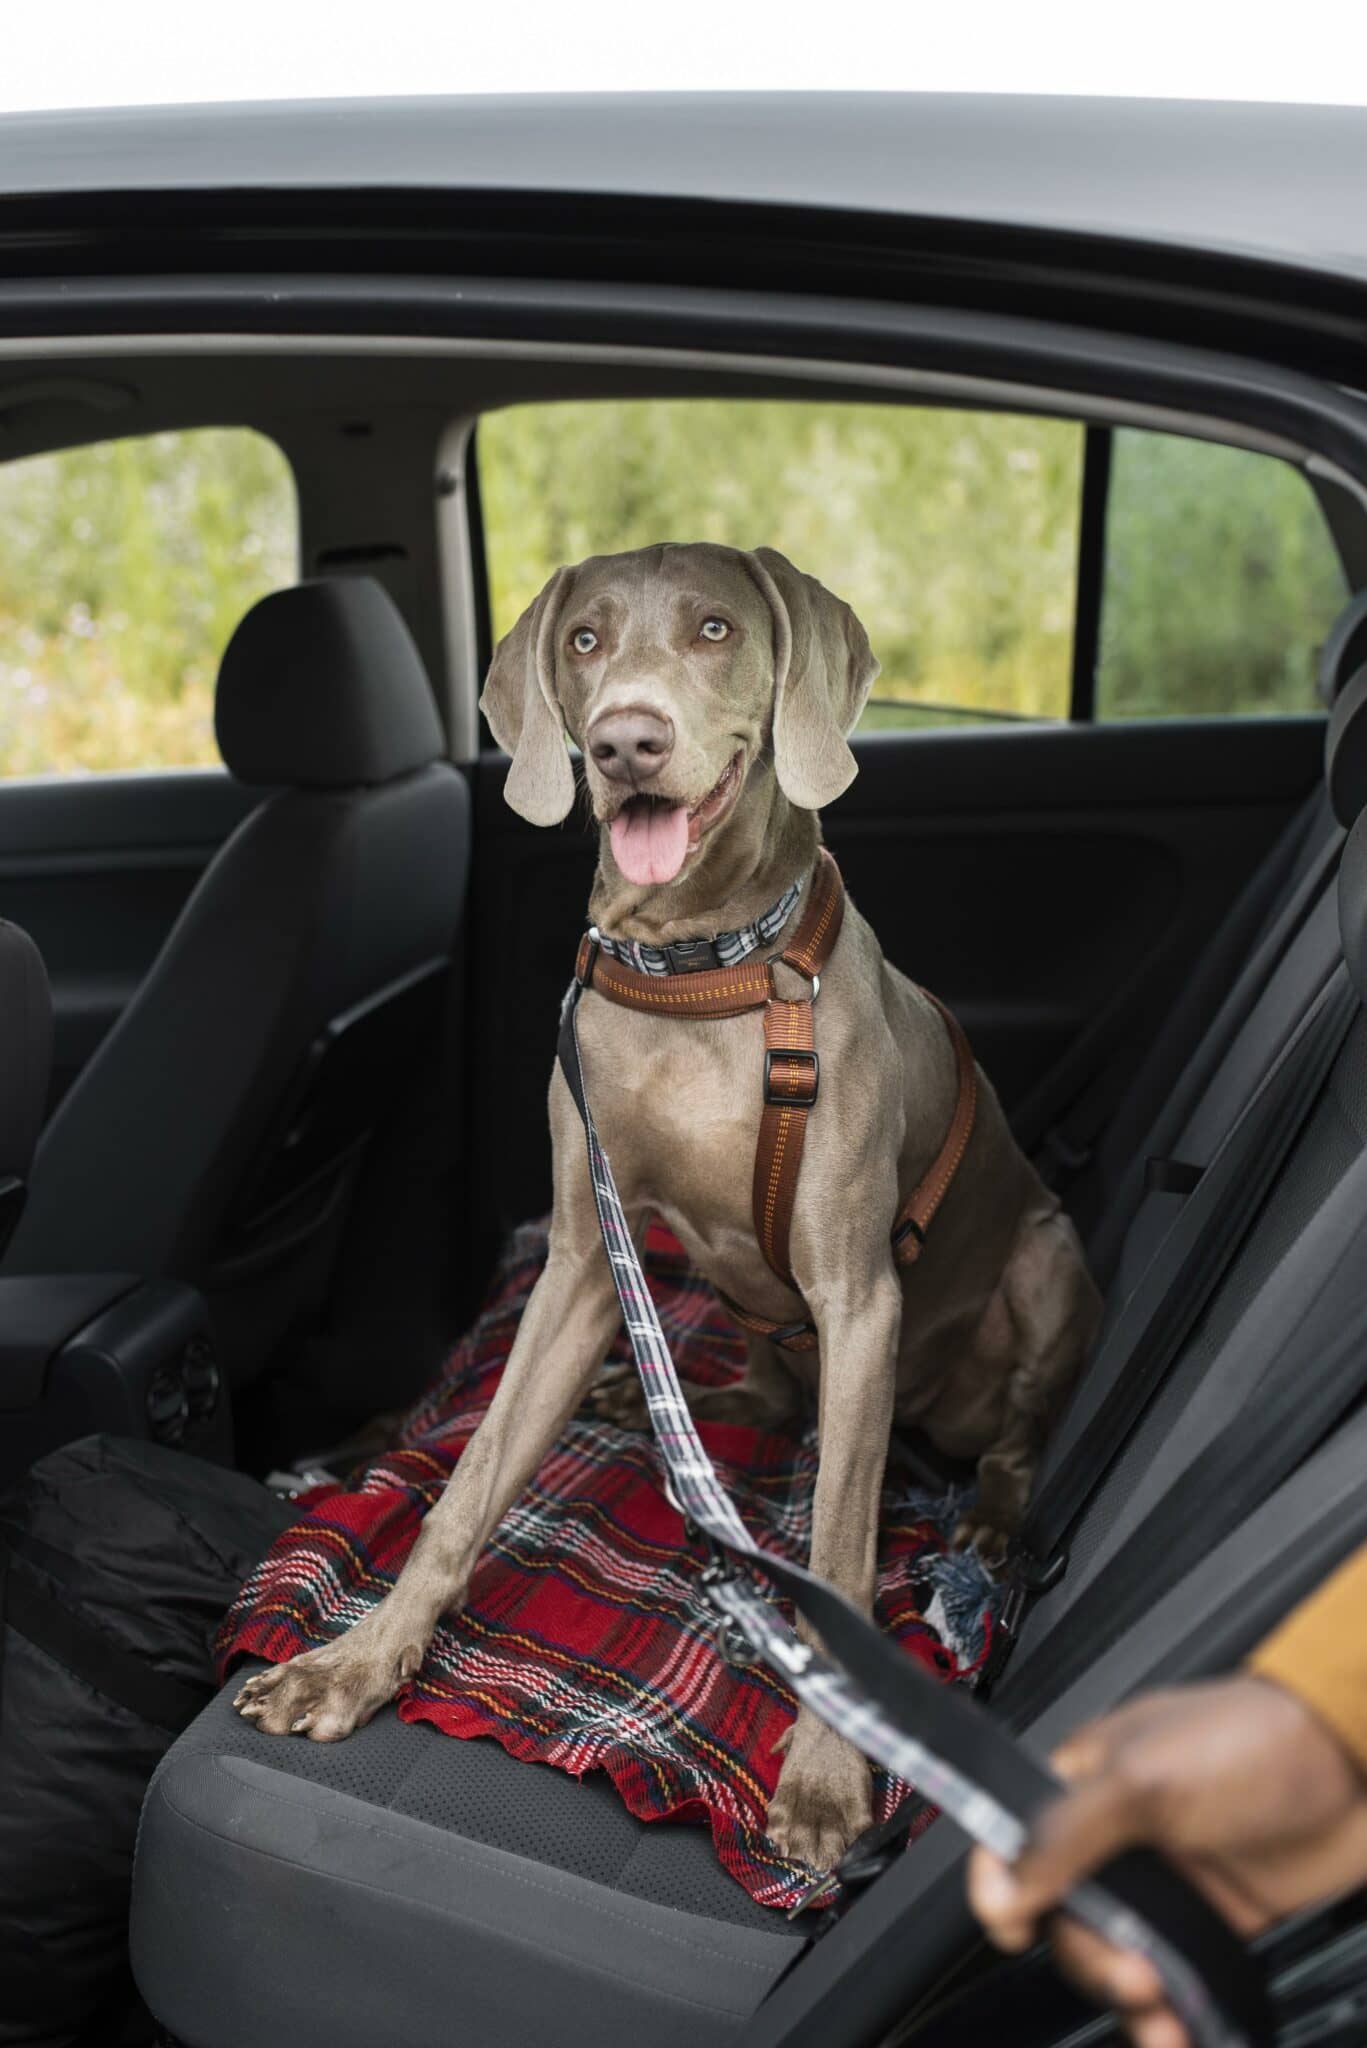 Cómo viajar con un perro en el coche?